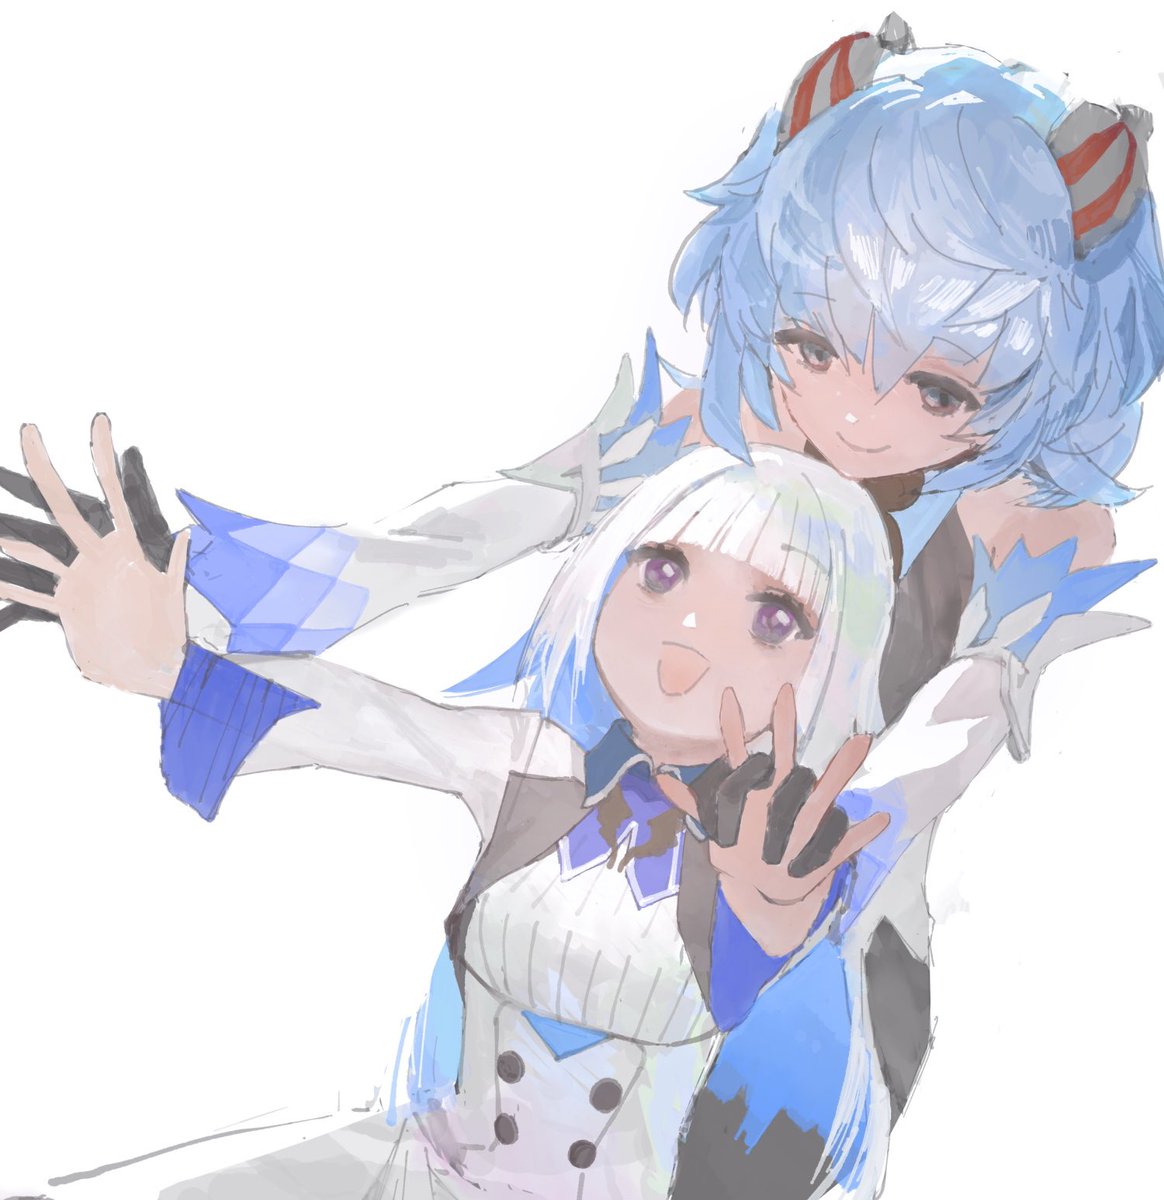 ganyu (genshin impact) multiple girls 2girls blue hair horns smile white background gloves  illustration images